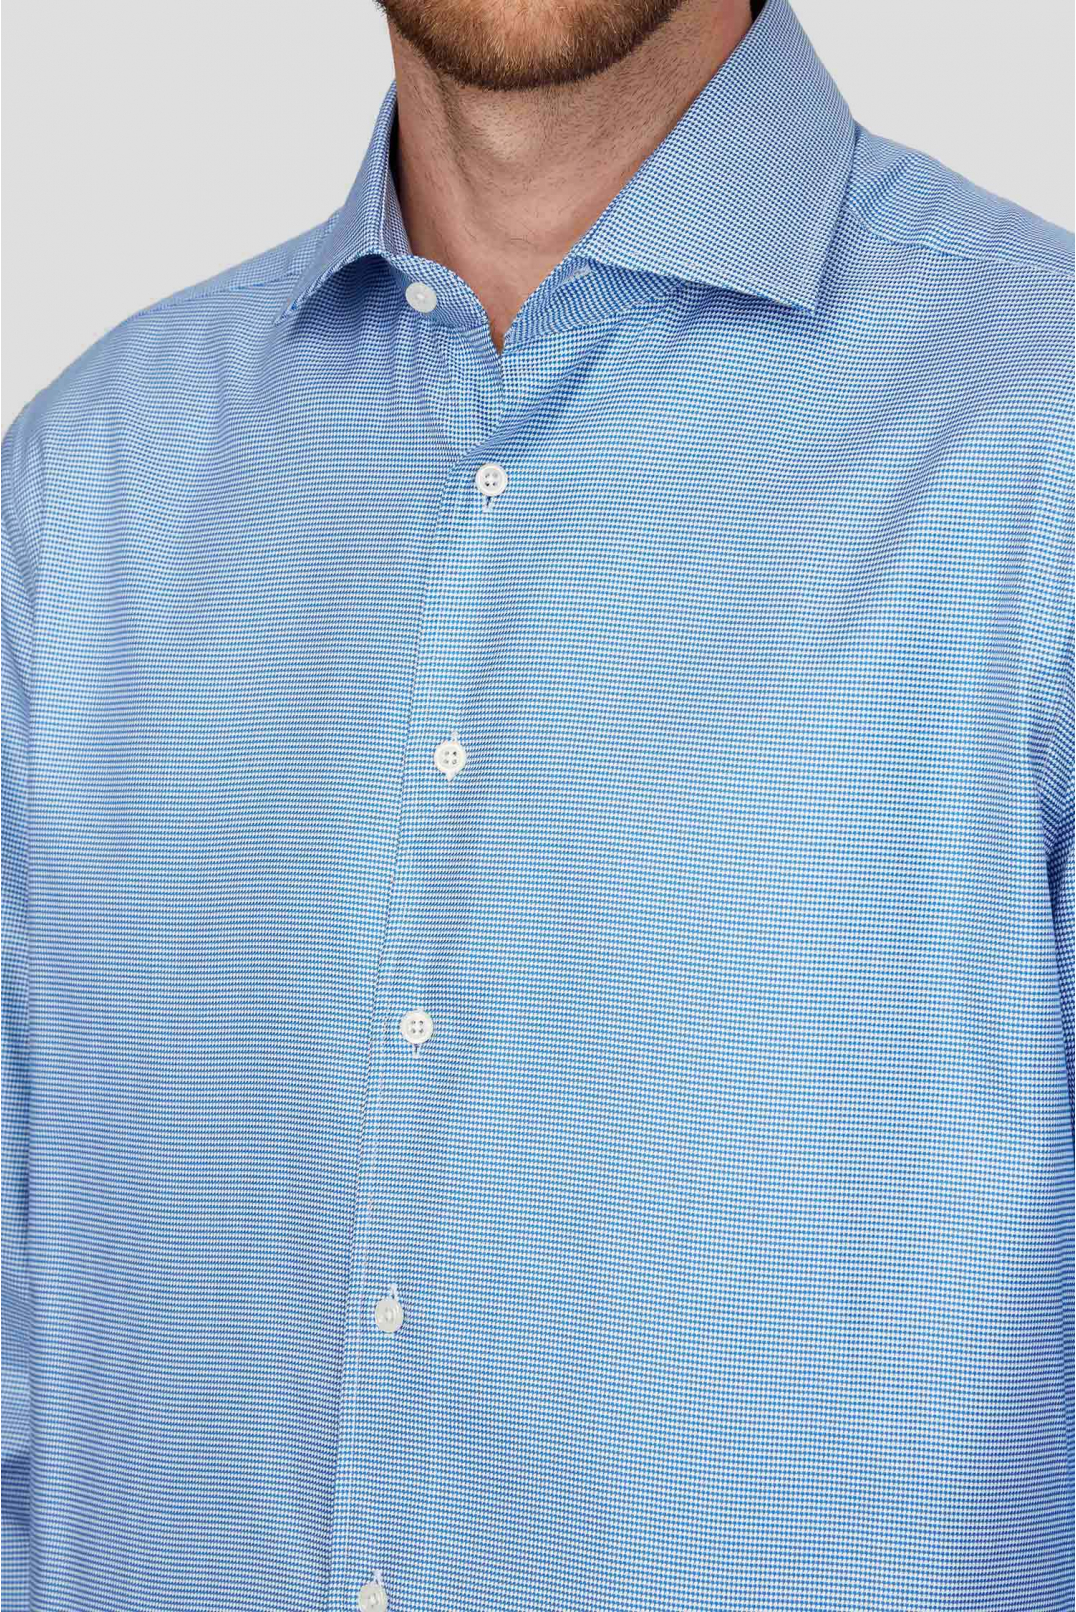 Мужская синяя рубашка - 4